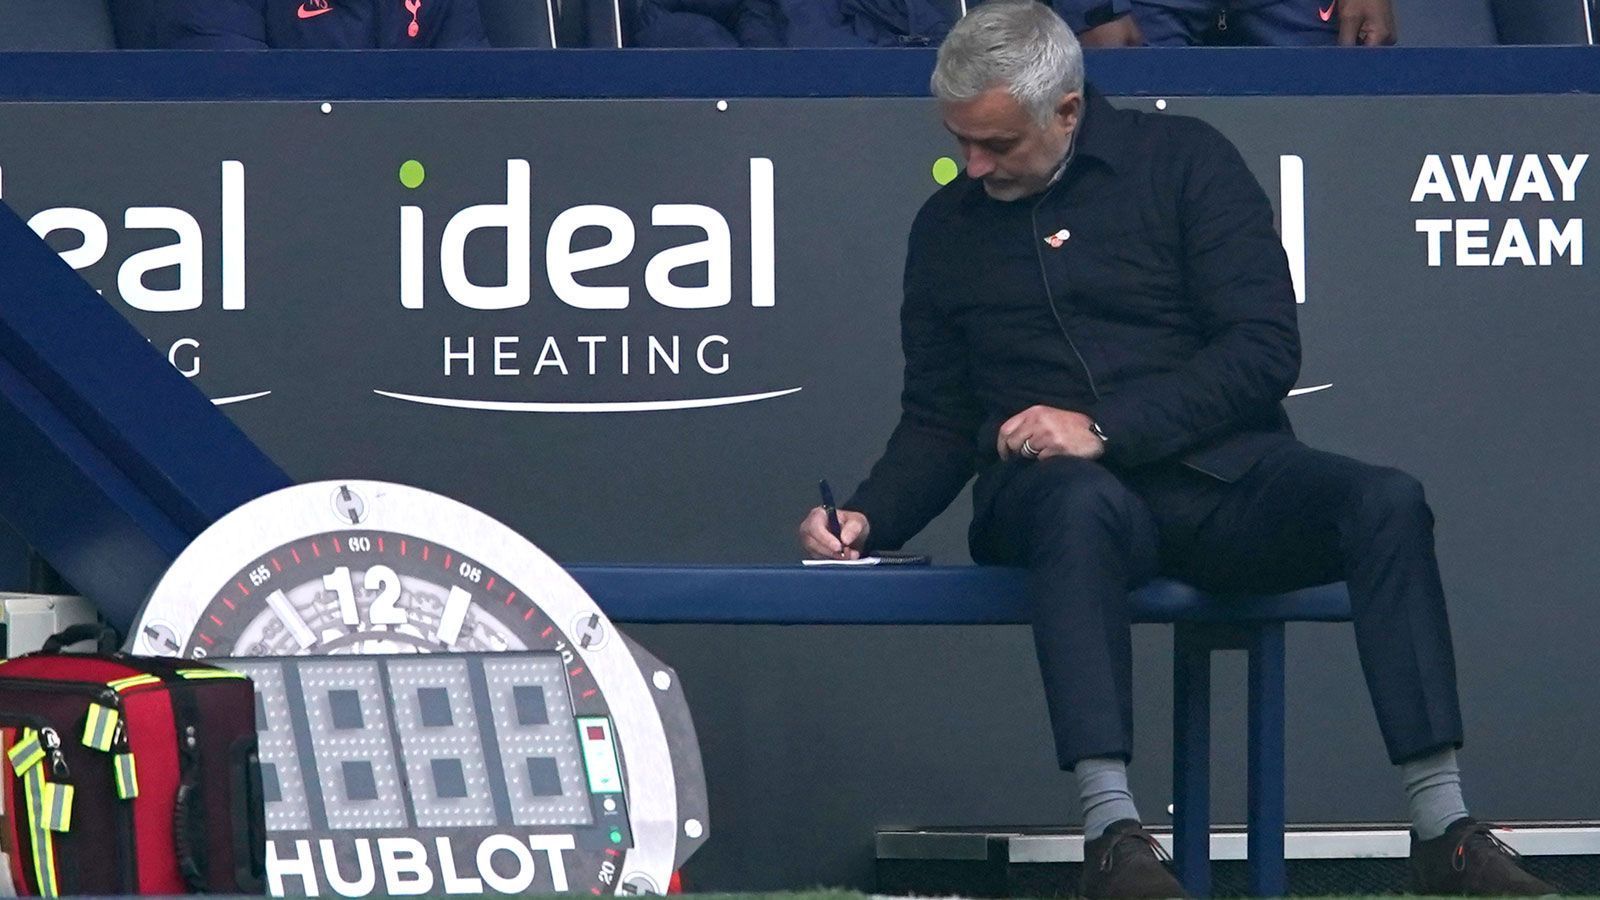 
                <strong>Faktor 5: Jose Mourinhos neue Seite</strong><br>
                Die Handschrift des Jose Mourinho ist Anlaufschwierigkeiten in der vergangenen Saison endlich zu sehen. Dabei präsentiert sich "The Special One" von einer neuen Seite. Statt sich mit den Stars anzulegen und für Unruhe zu sorgen, zeigt Mourinho eine soziale Ader: Er ist ungewohnt demütig, herzt seine Spieler und nutzt den Austausch über Social Media. Auch nach der Eroberung der Tabellenspitze bleibt der zweimalige Champions-League-Sieger auf dem Boden. "Wir spielen nicht um den Titel", sagte Mou. Die guten Leistungen begründet er mit einer guten Arbeit auf dem Transfermarkt und starken Trainingseinheiten in der kurzen Vorbereitung.
              